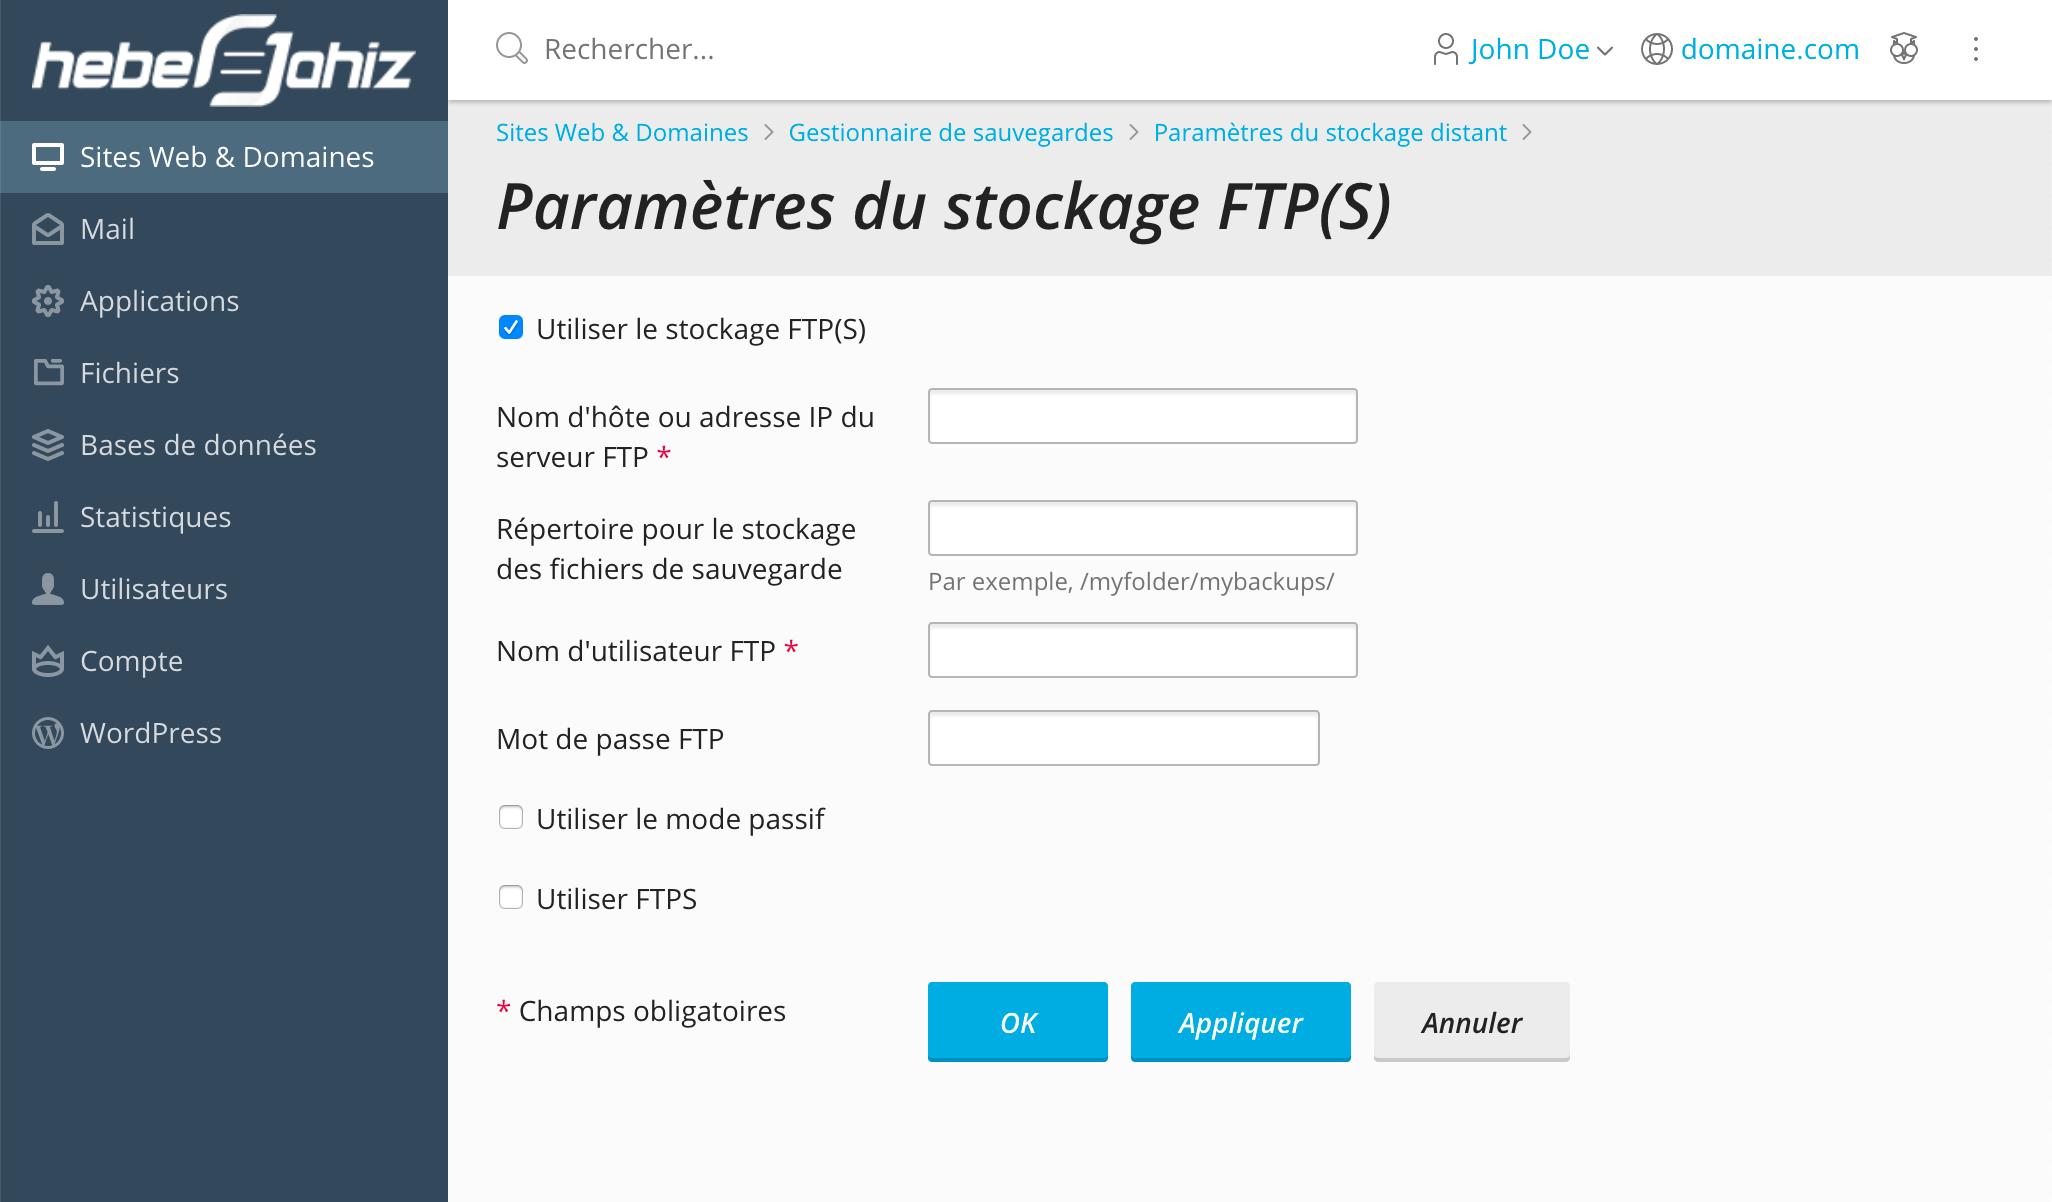 Plesk : Paramètres FTP pour stockage distant